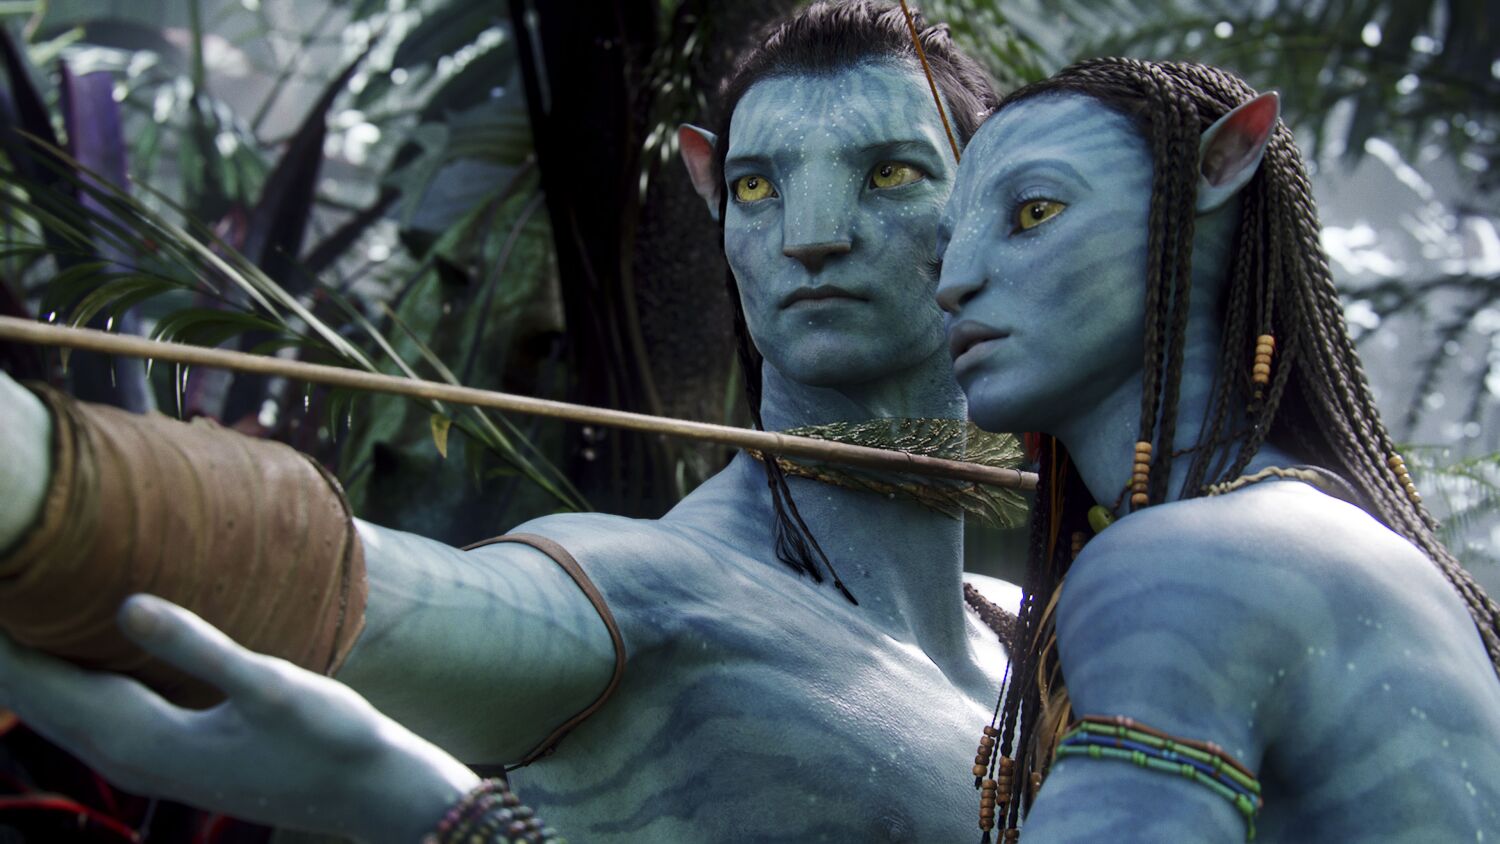 'Avatar' desafió a los cínicos. 13 años después, vuelve a los cines para preparar el escenario de 'Avatar 2'